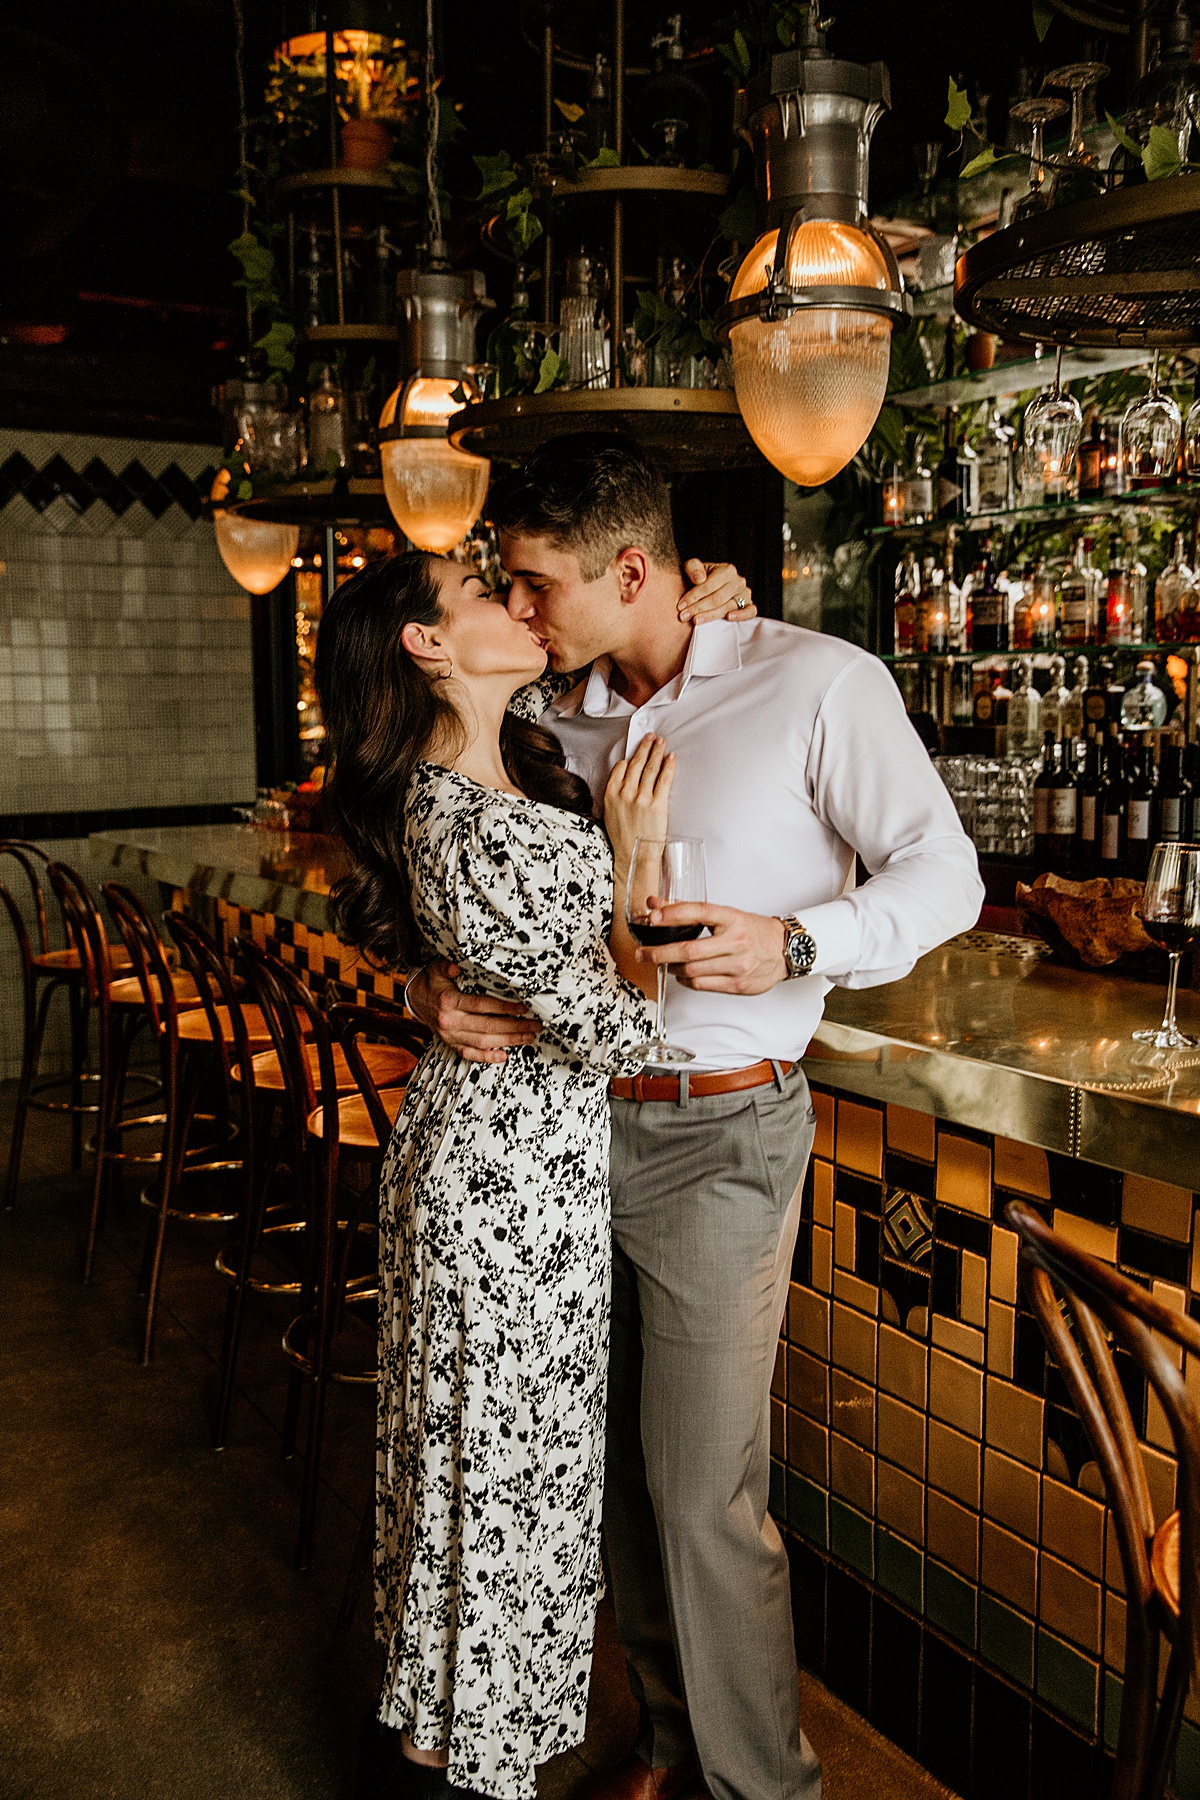 Man and woman kissing at a bar restaurant.